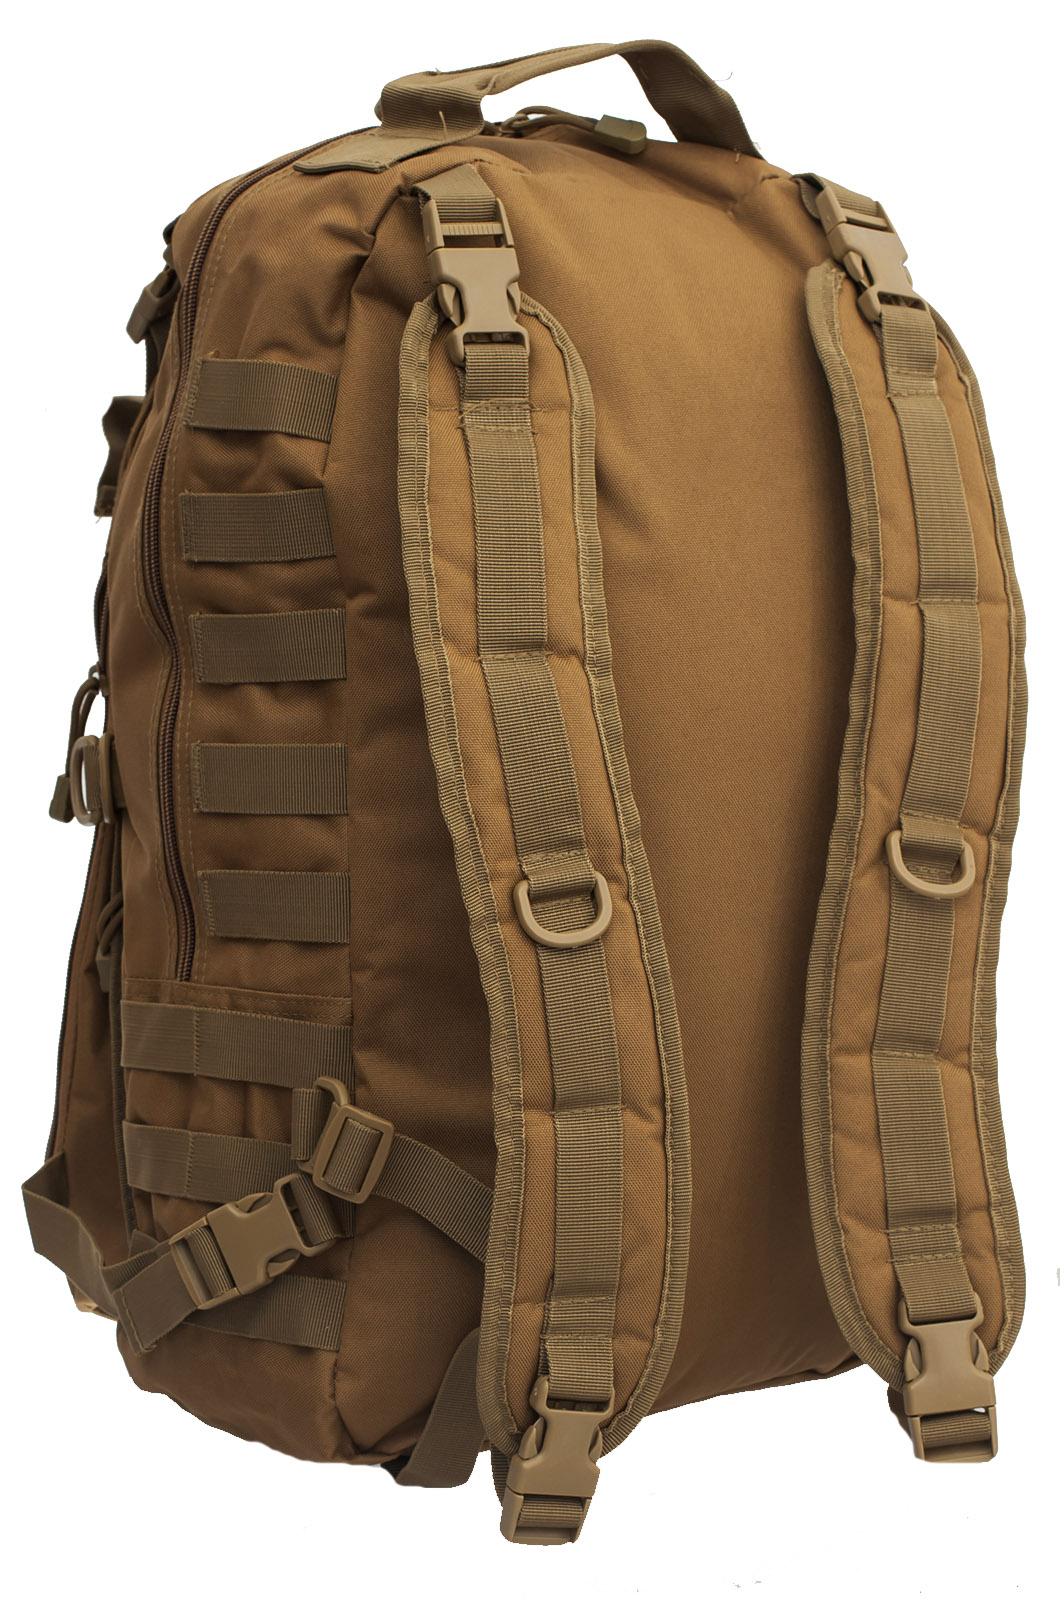 Купить армейский рейдовый рюкзак с нашивкой ДПС оптом или в розницу